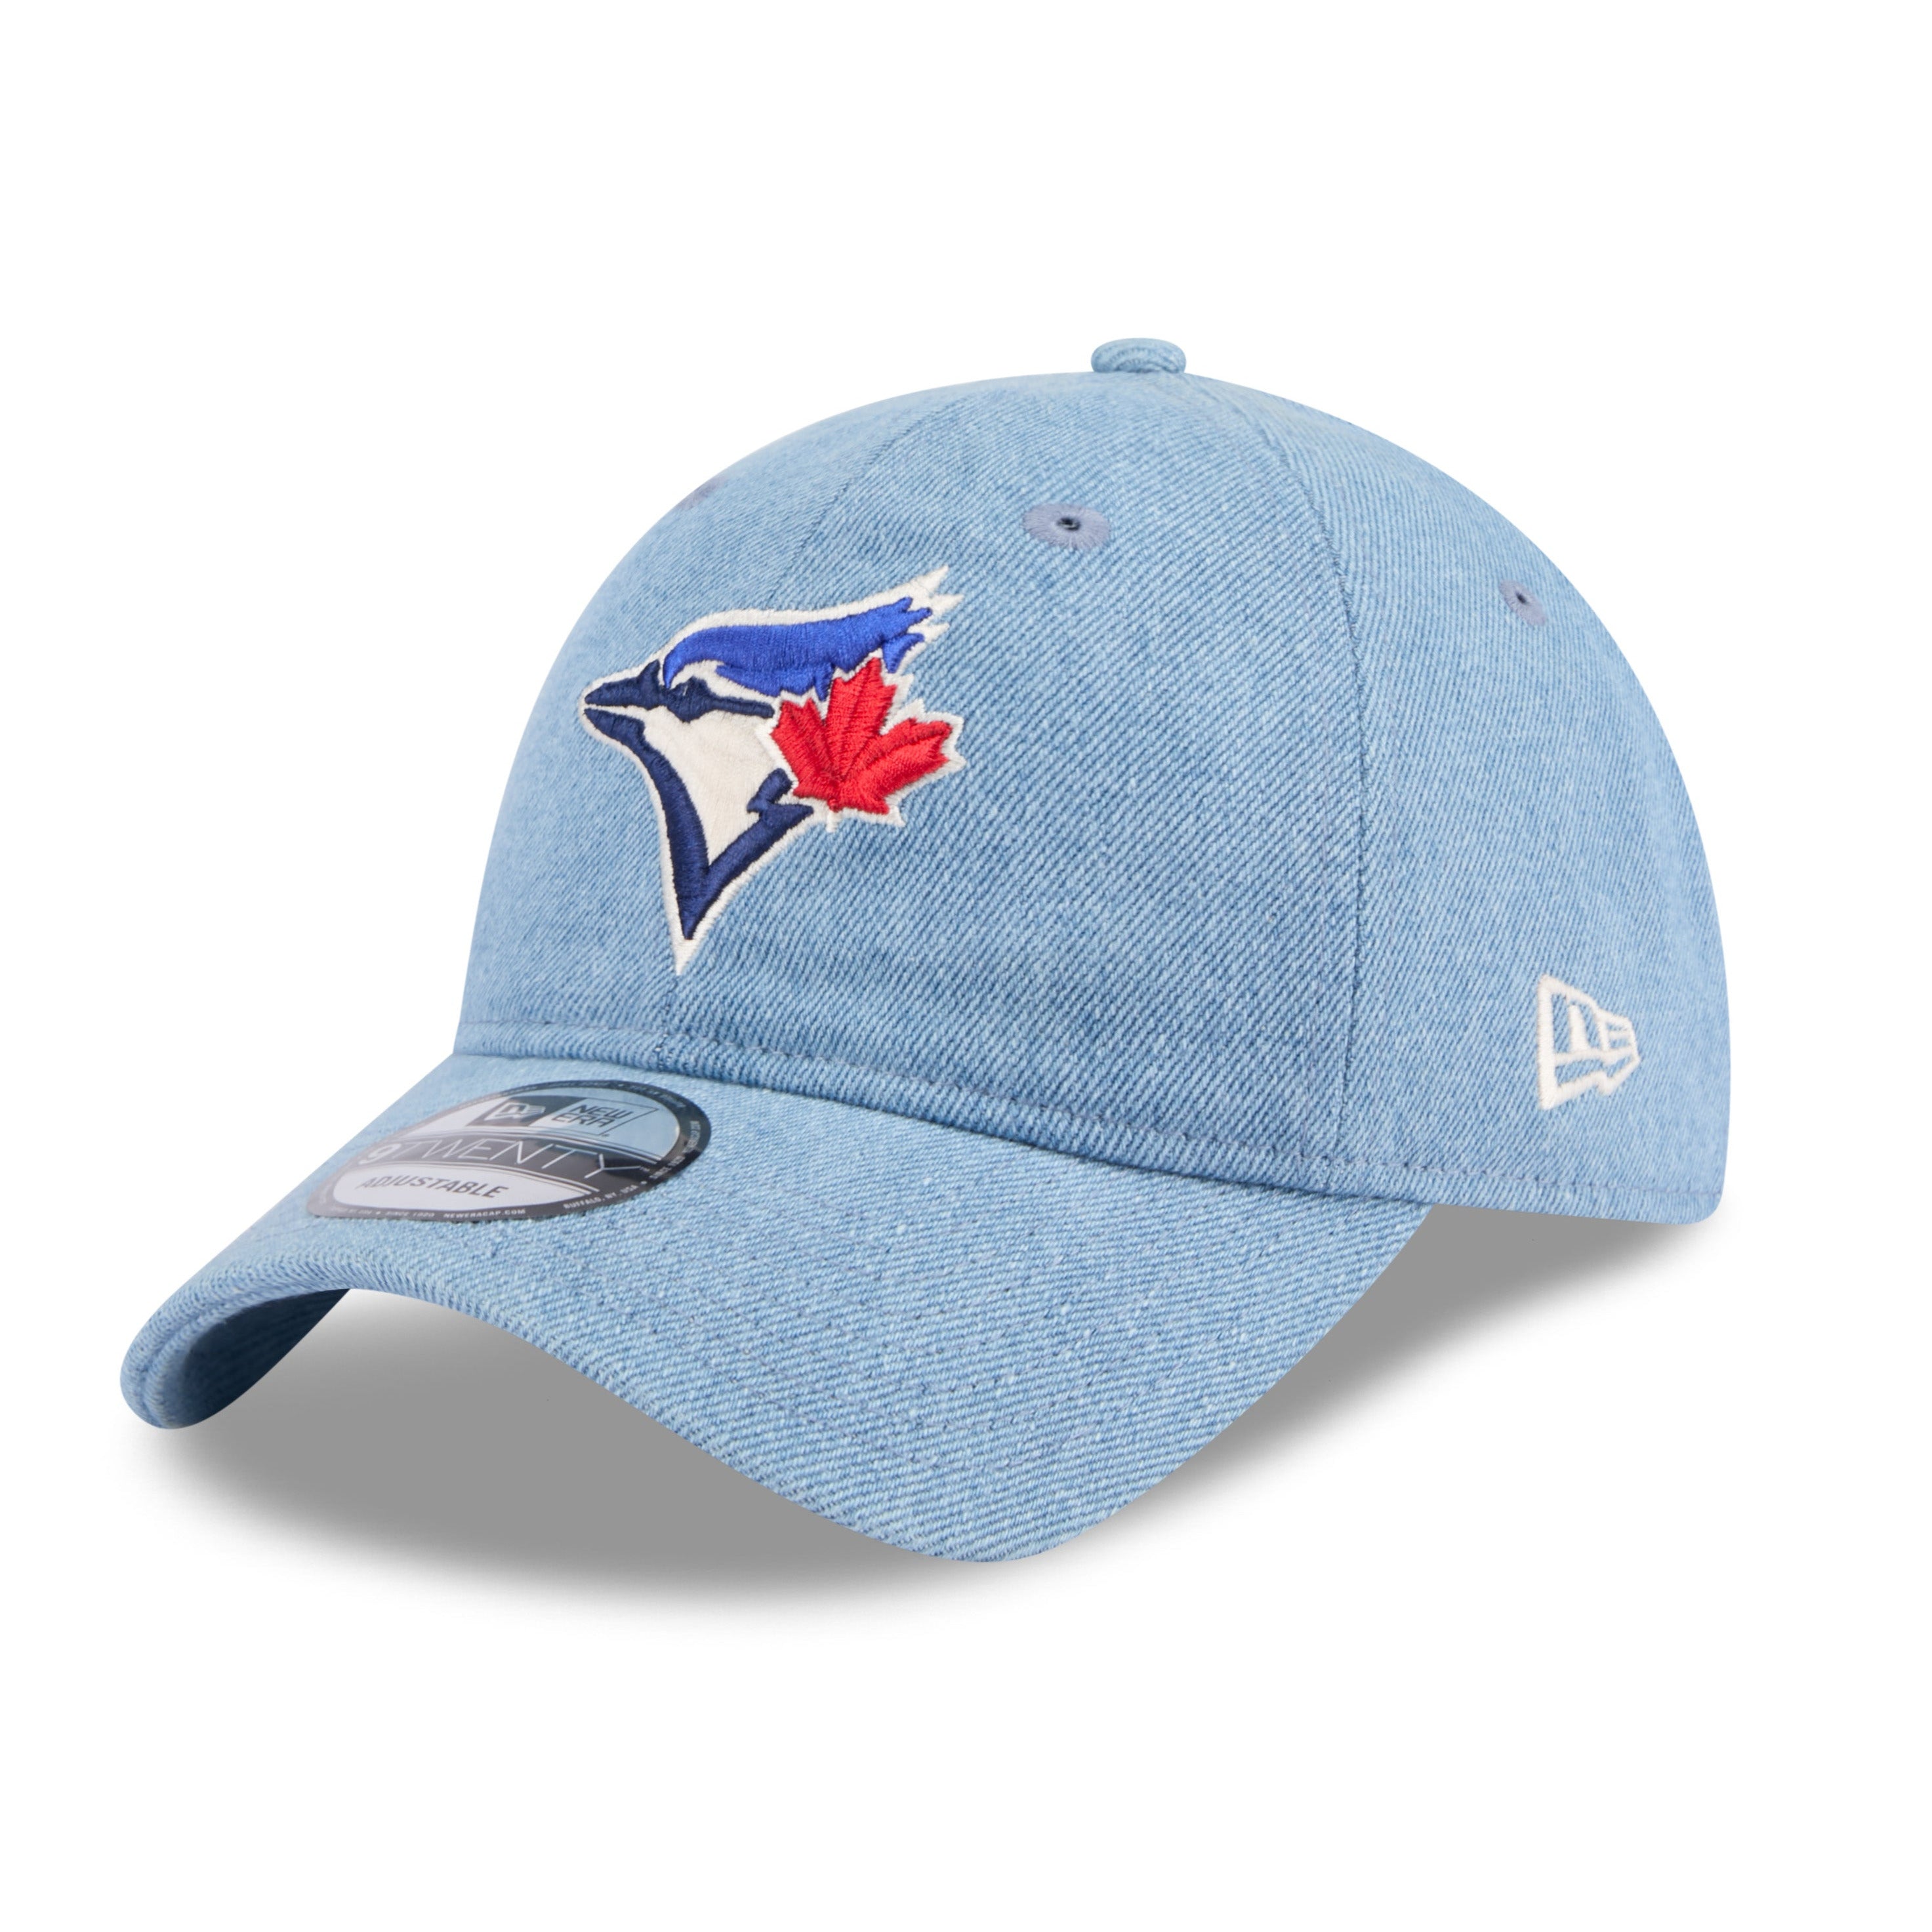 NEW ERA 9TWENTY MLB TORONTO BLUE JAYS WASHED DENIM BLUE CAP